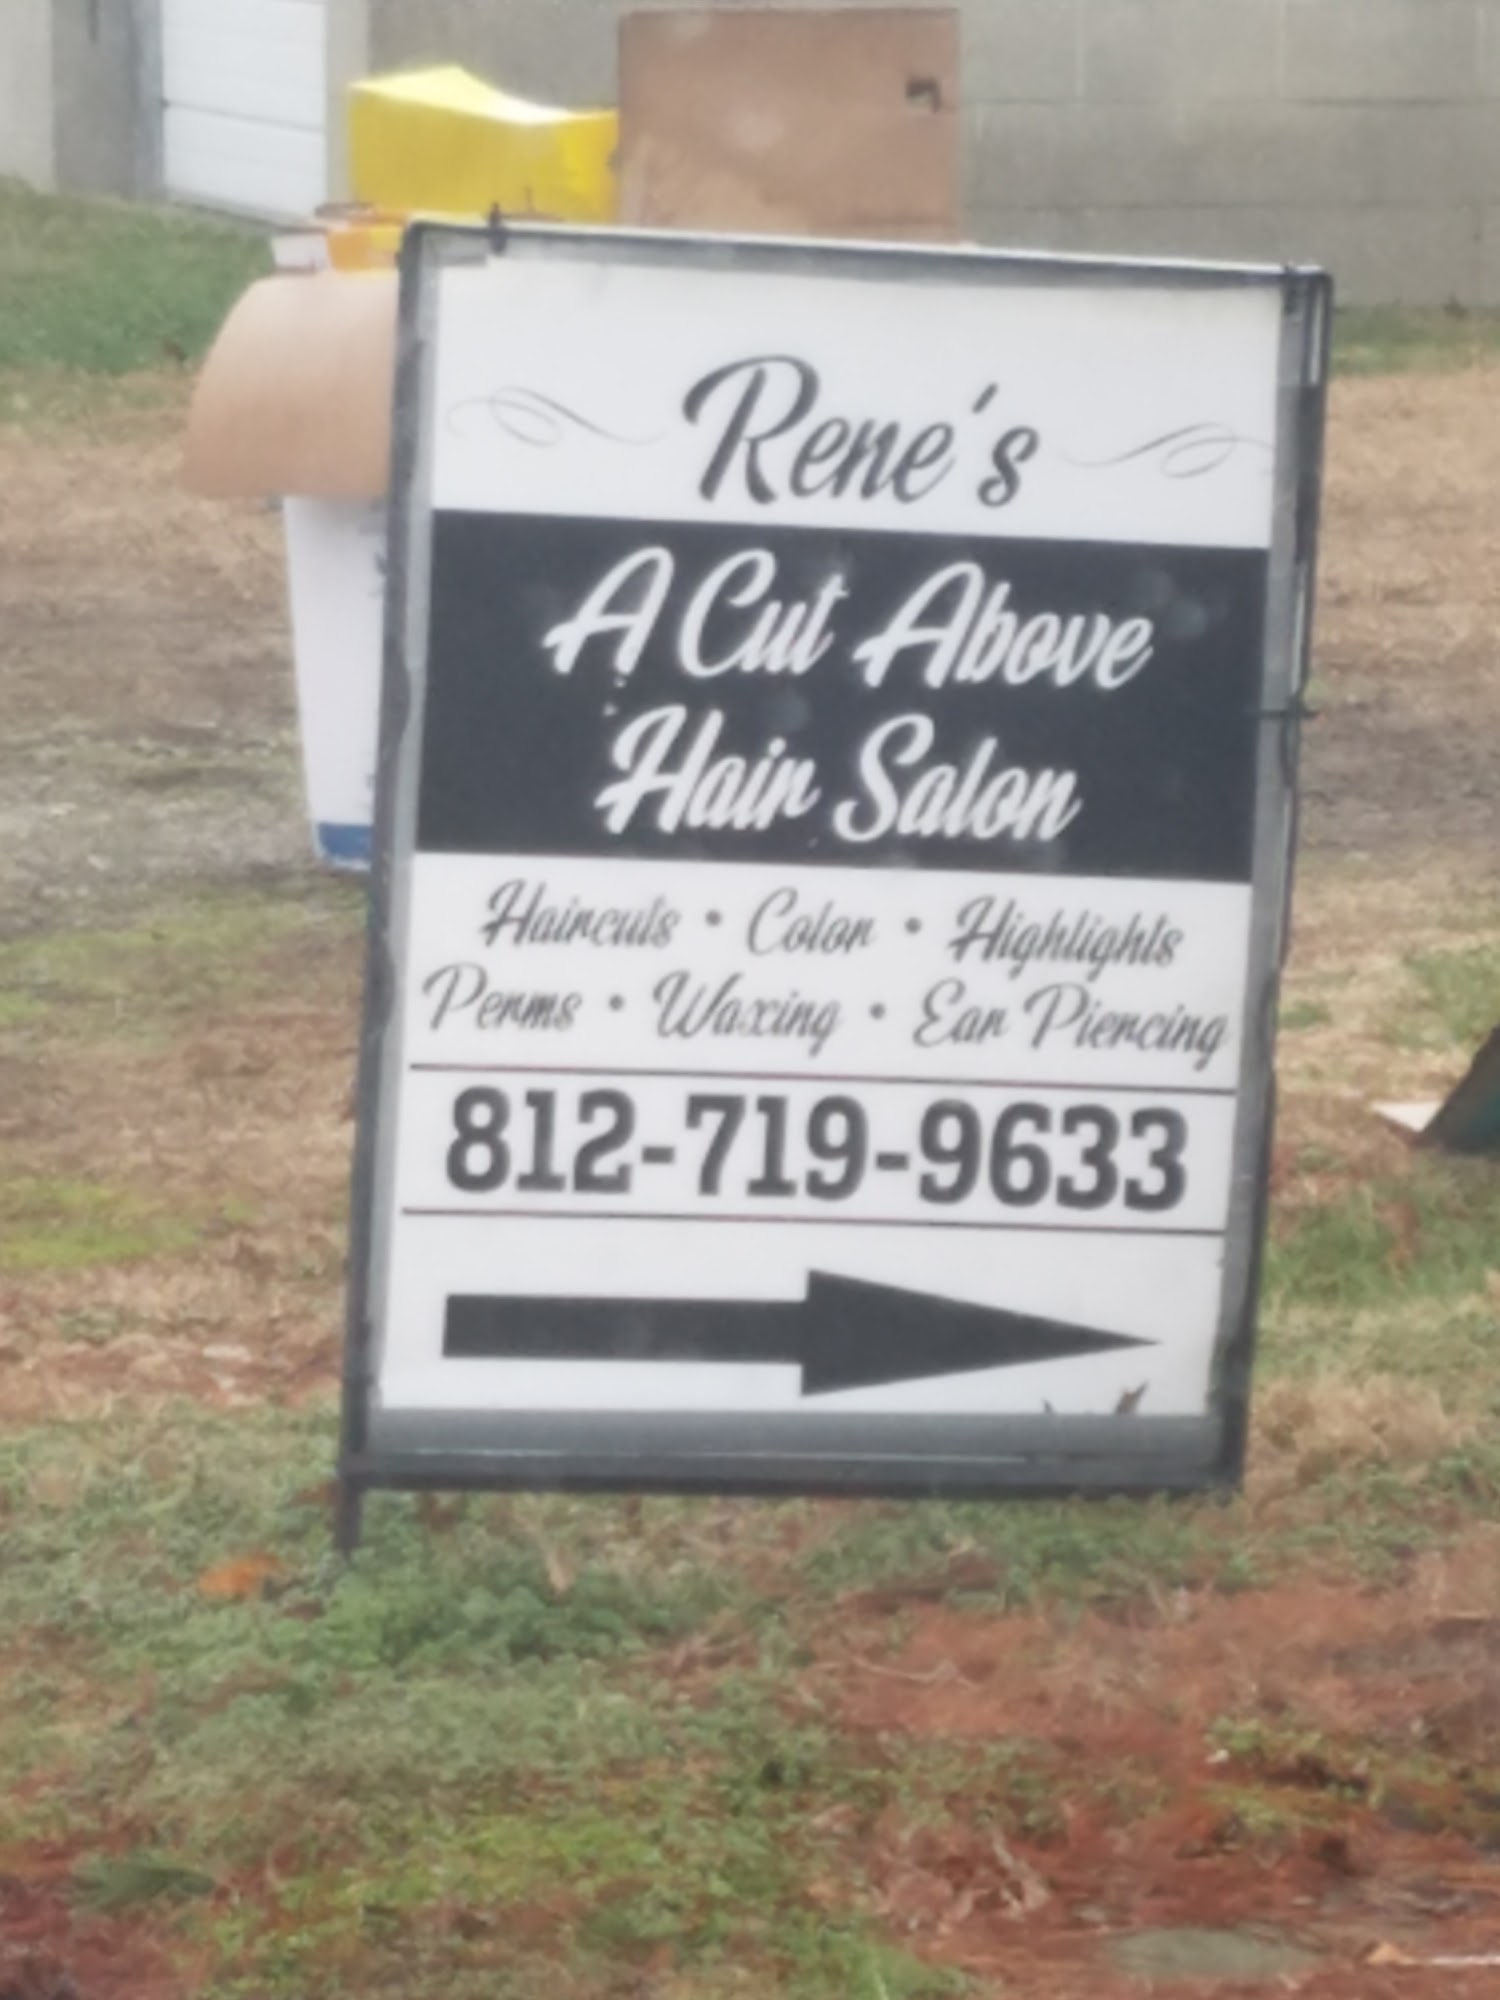 Rene's A Cut Above Hair Salon